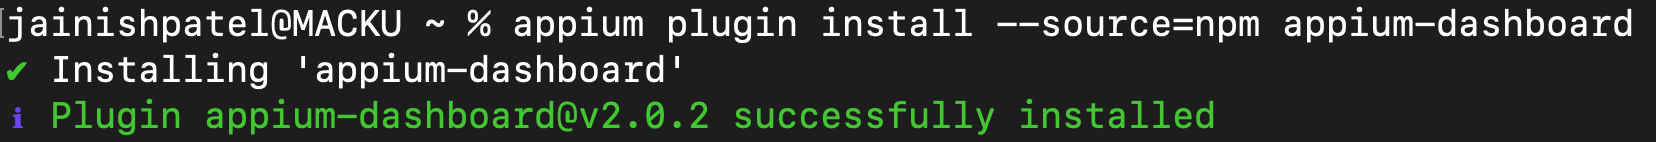 appium plugin install --source=npm appium-dashboard